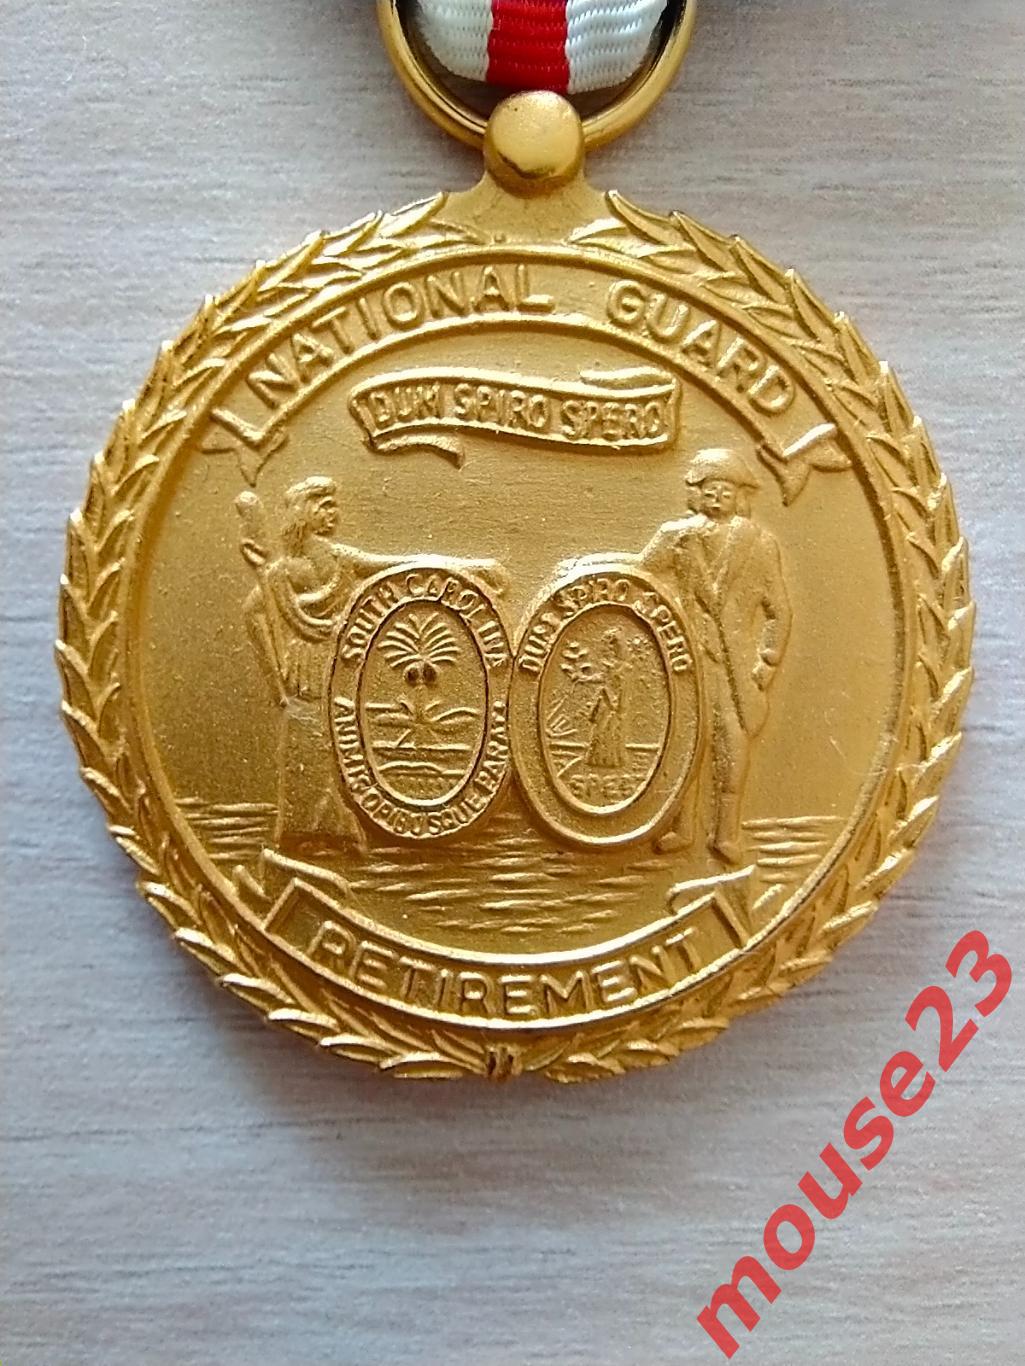 Пенсионная медаль Южной Каролины национальной гвардии. США 1